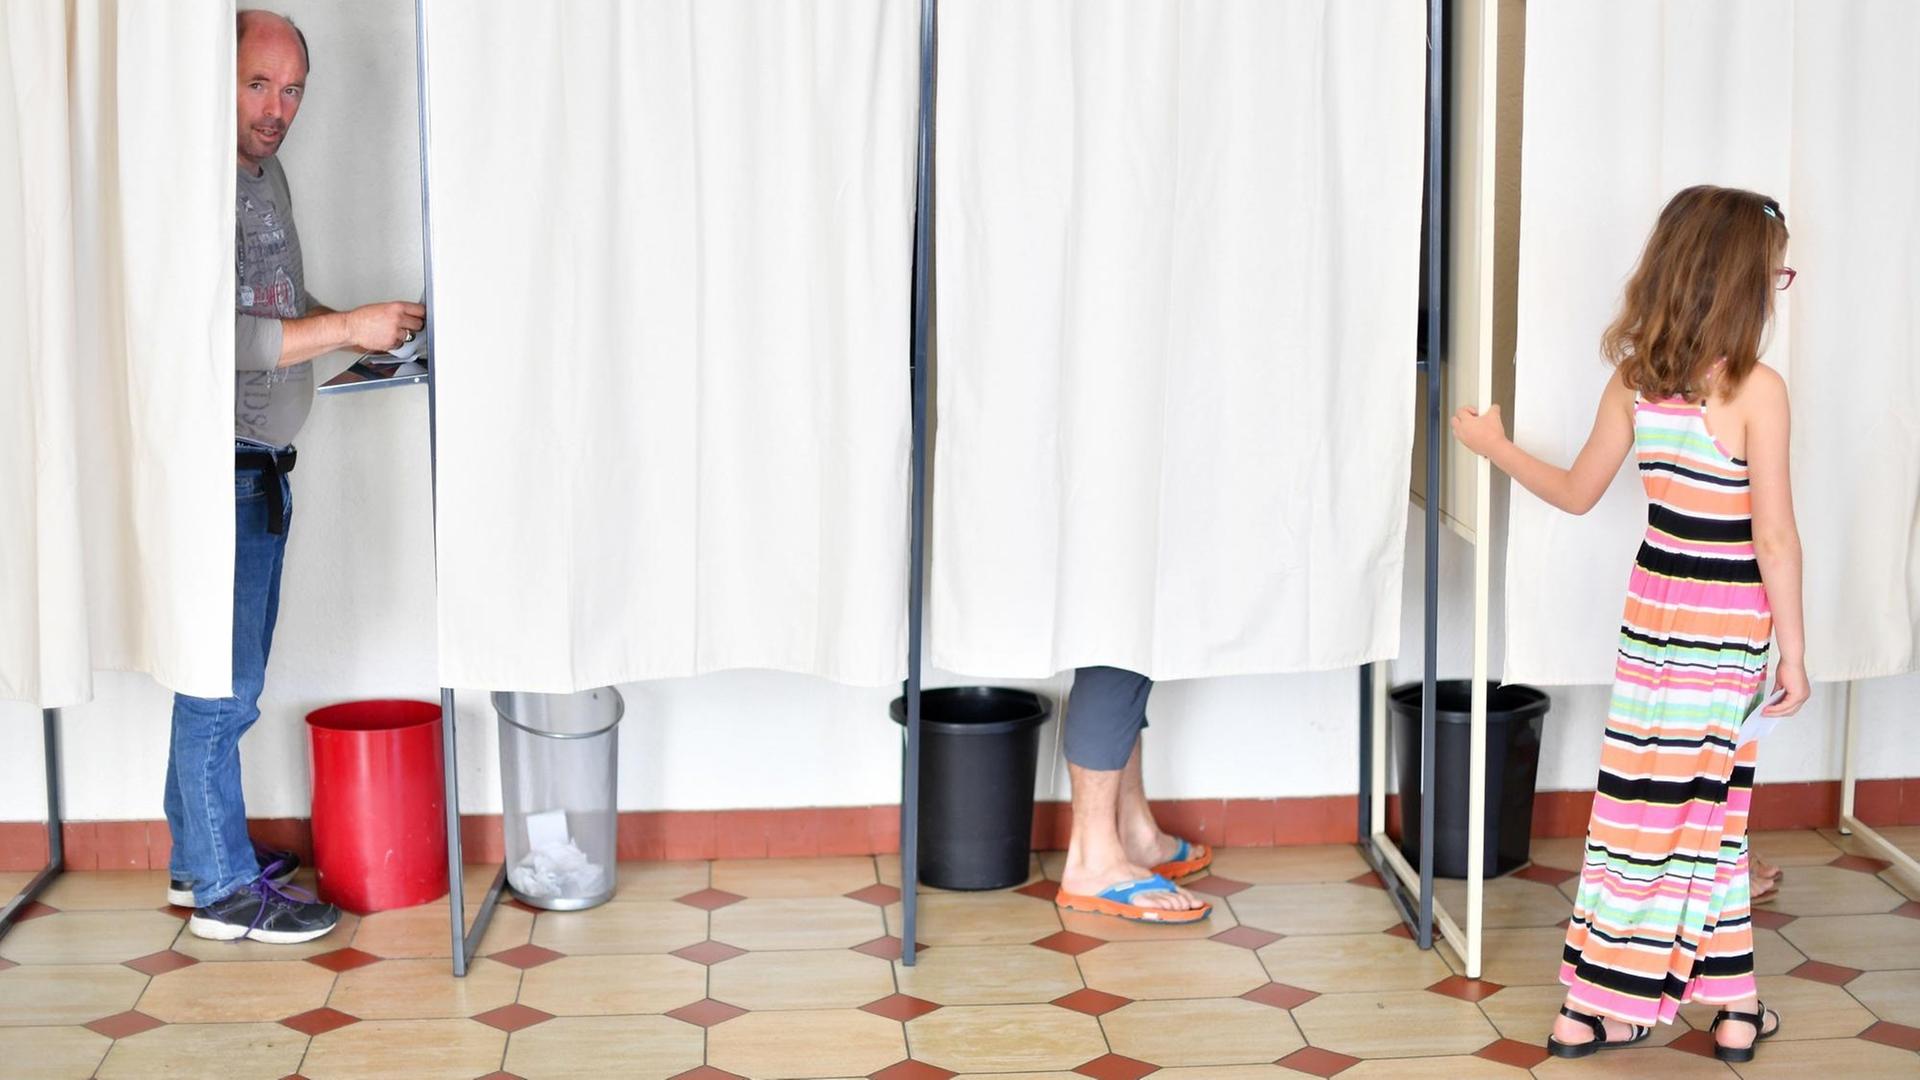 In Frankreich wird eine neue Nationalversammlung gewählt - das Bild zeigt Wahlkabinen, in denen Bürger votieren.